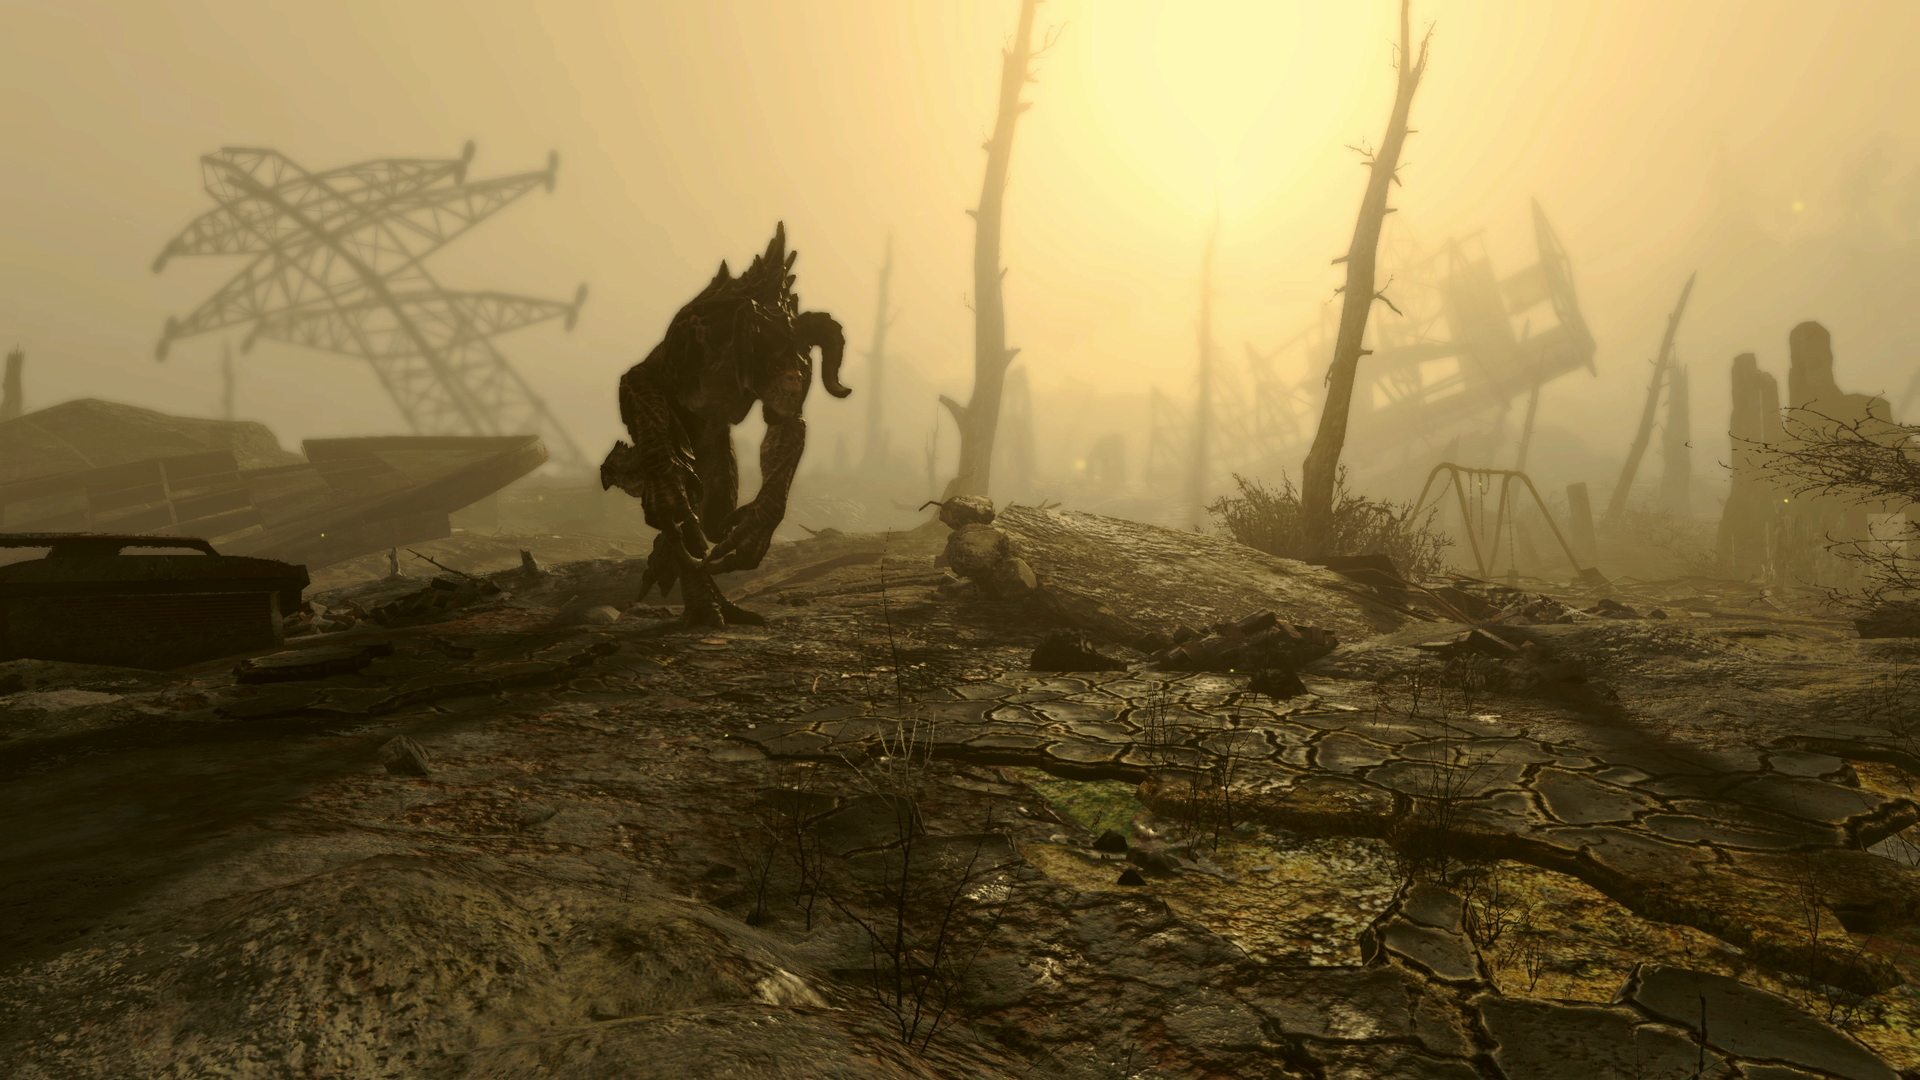 Immagine pubblicata in relazione al seguente contenuto: Primi trailer e screenshot ufficiali in Full HD del game Fallout 4 di Bethesda | Nome immagine: news22682_Bethesda-Fallout-4-screenshot_7.png